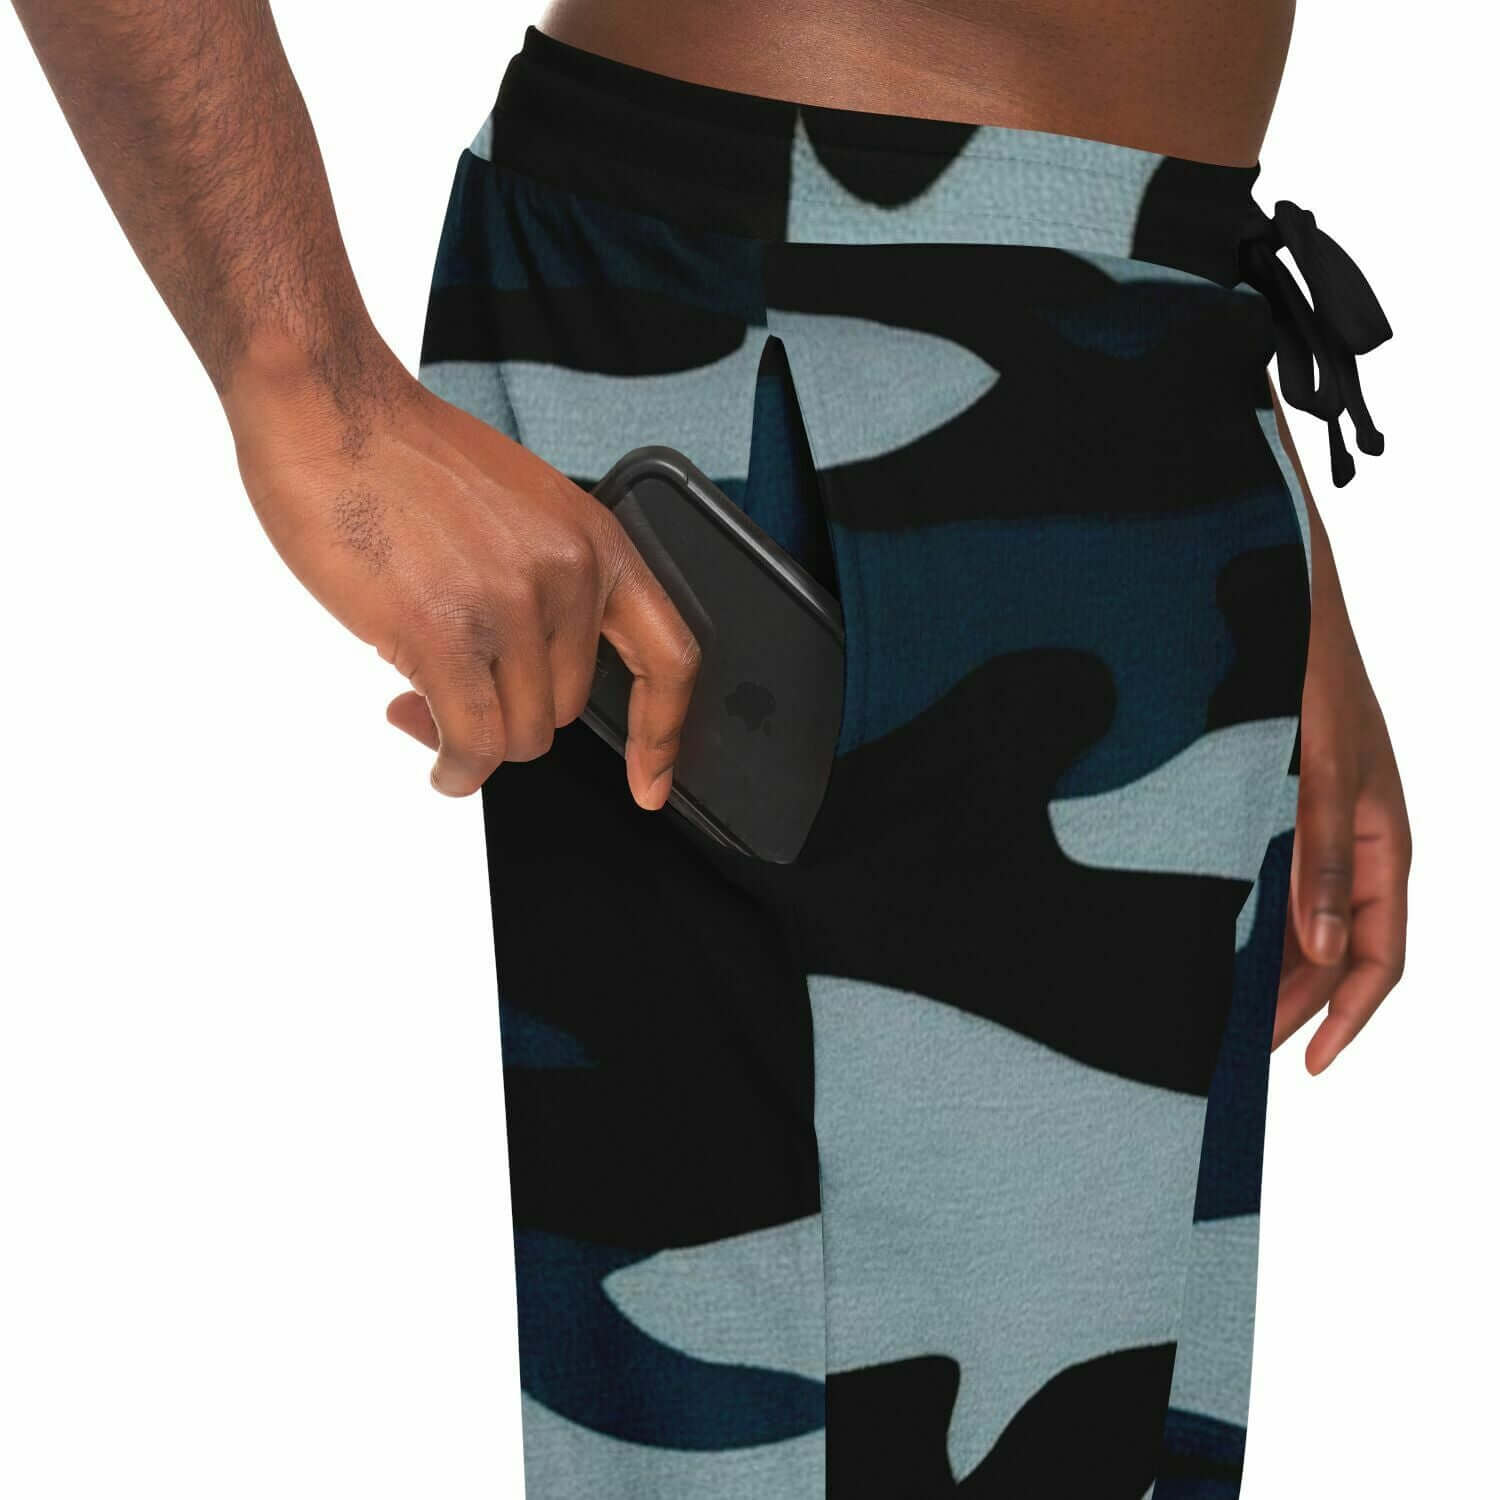 Commando Pants For Men | Black & Blue